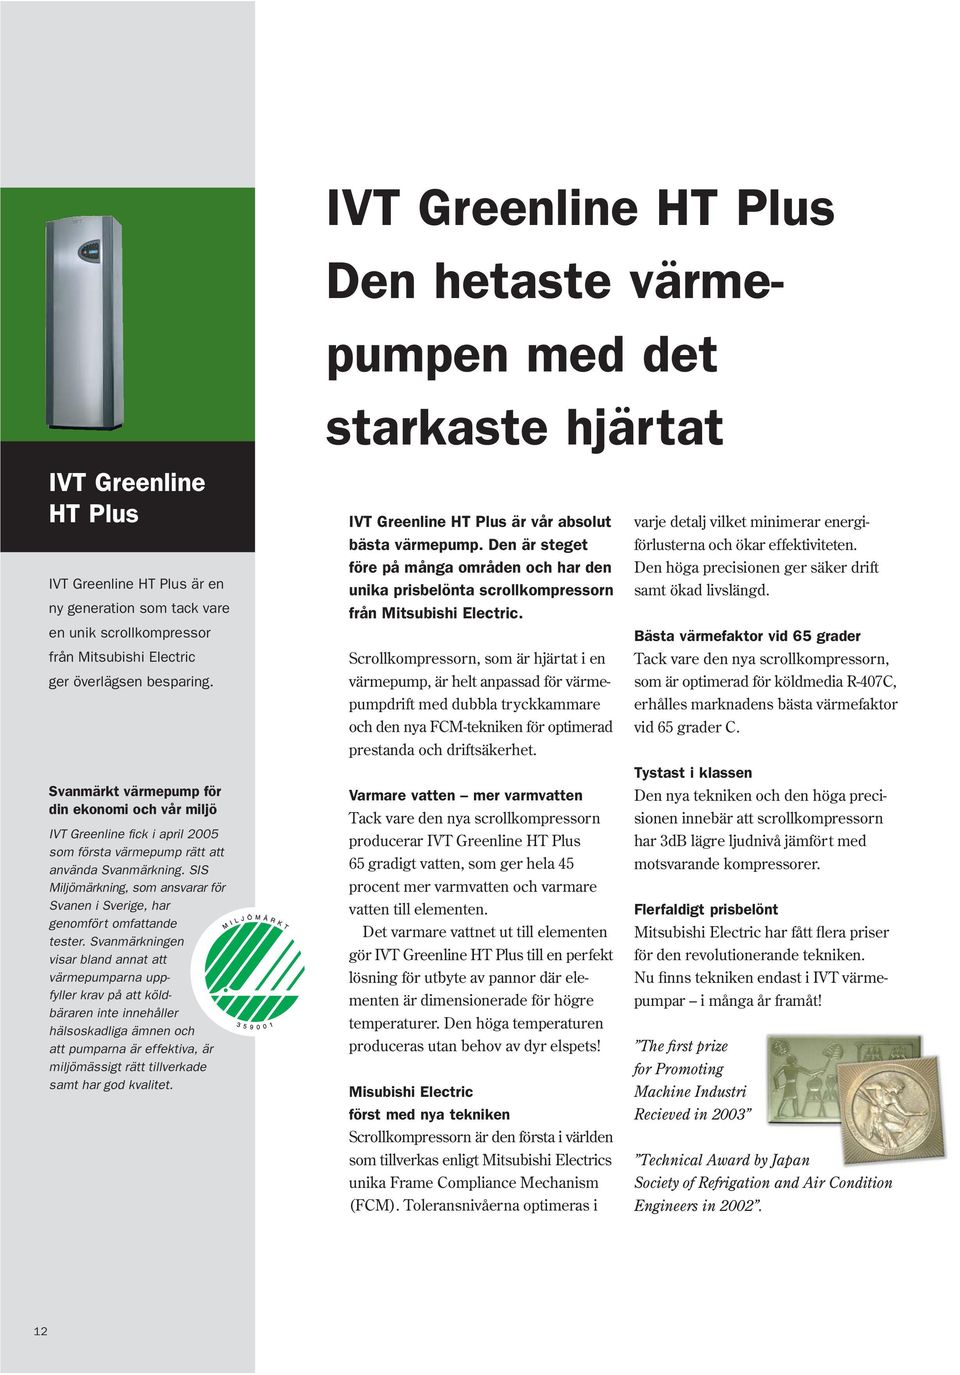 SIS Miljömärkning, som ansvarar för Svanen i Sverige, har genomfört omfattande tester.